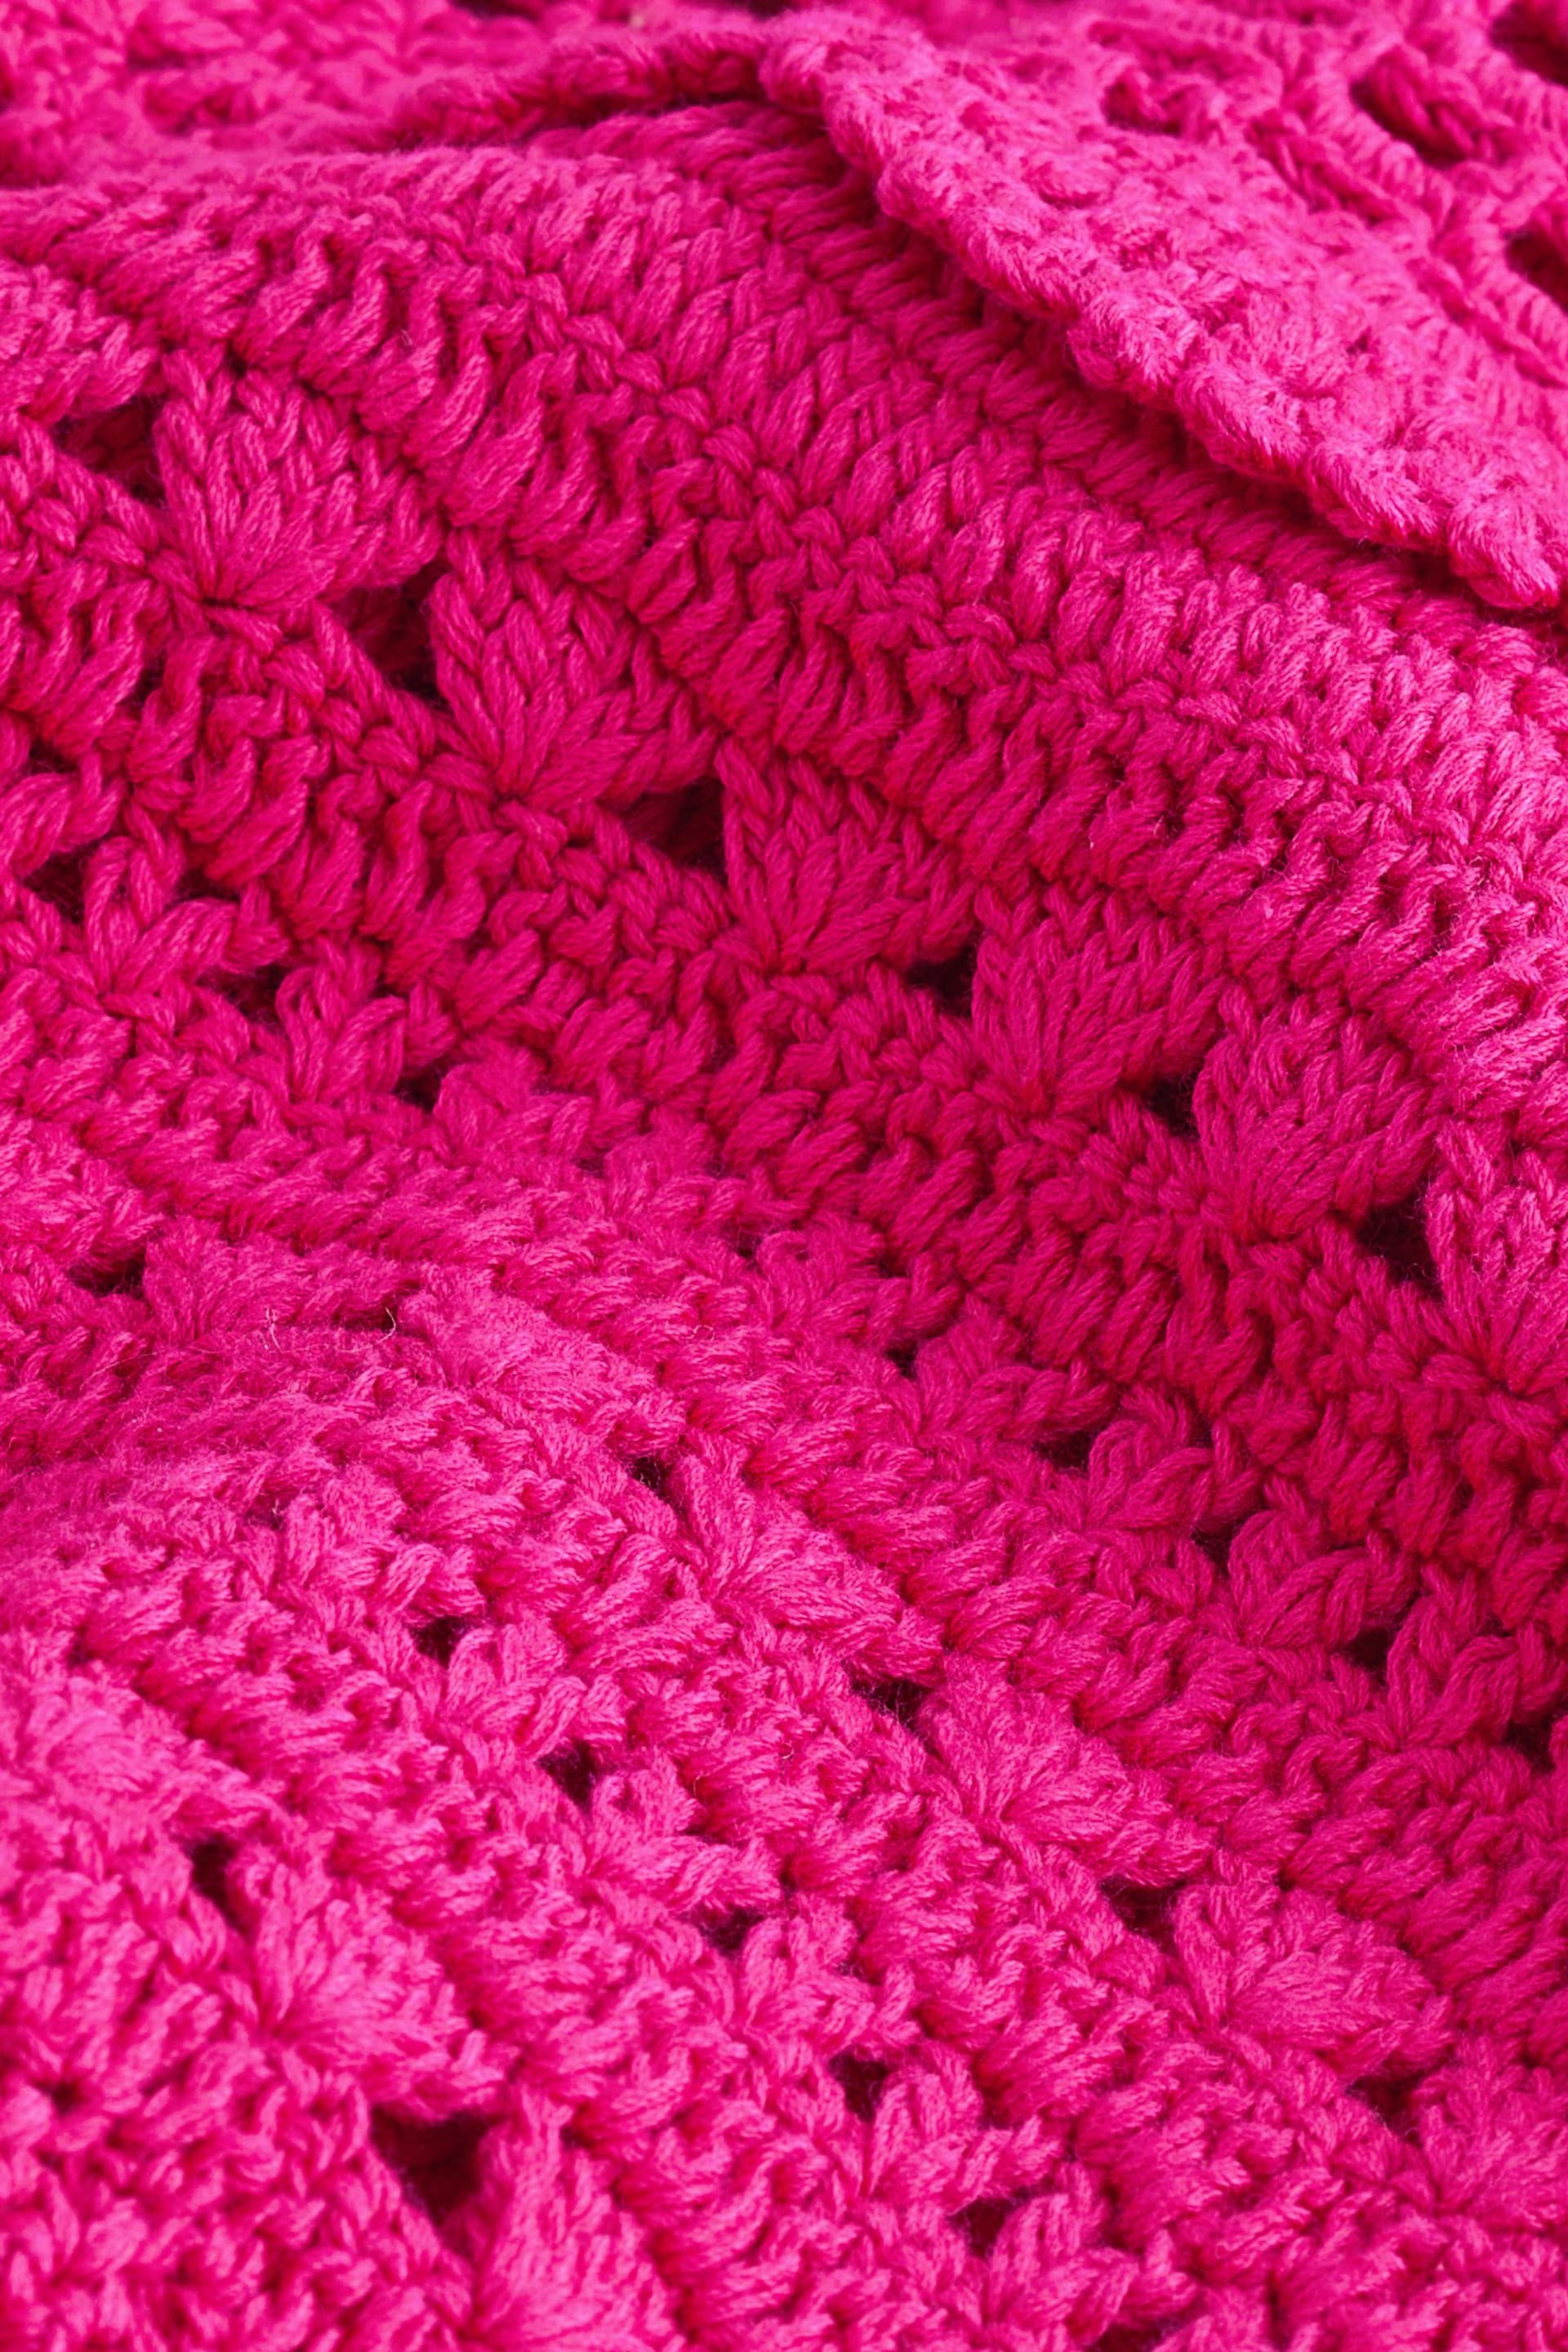 Pink Premium Hand Crochet Sleeveless Midi Dress - Image 6 of 6